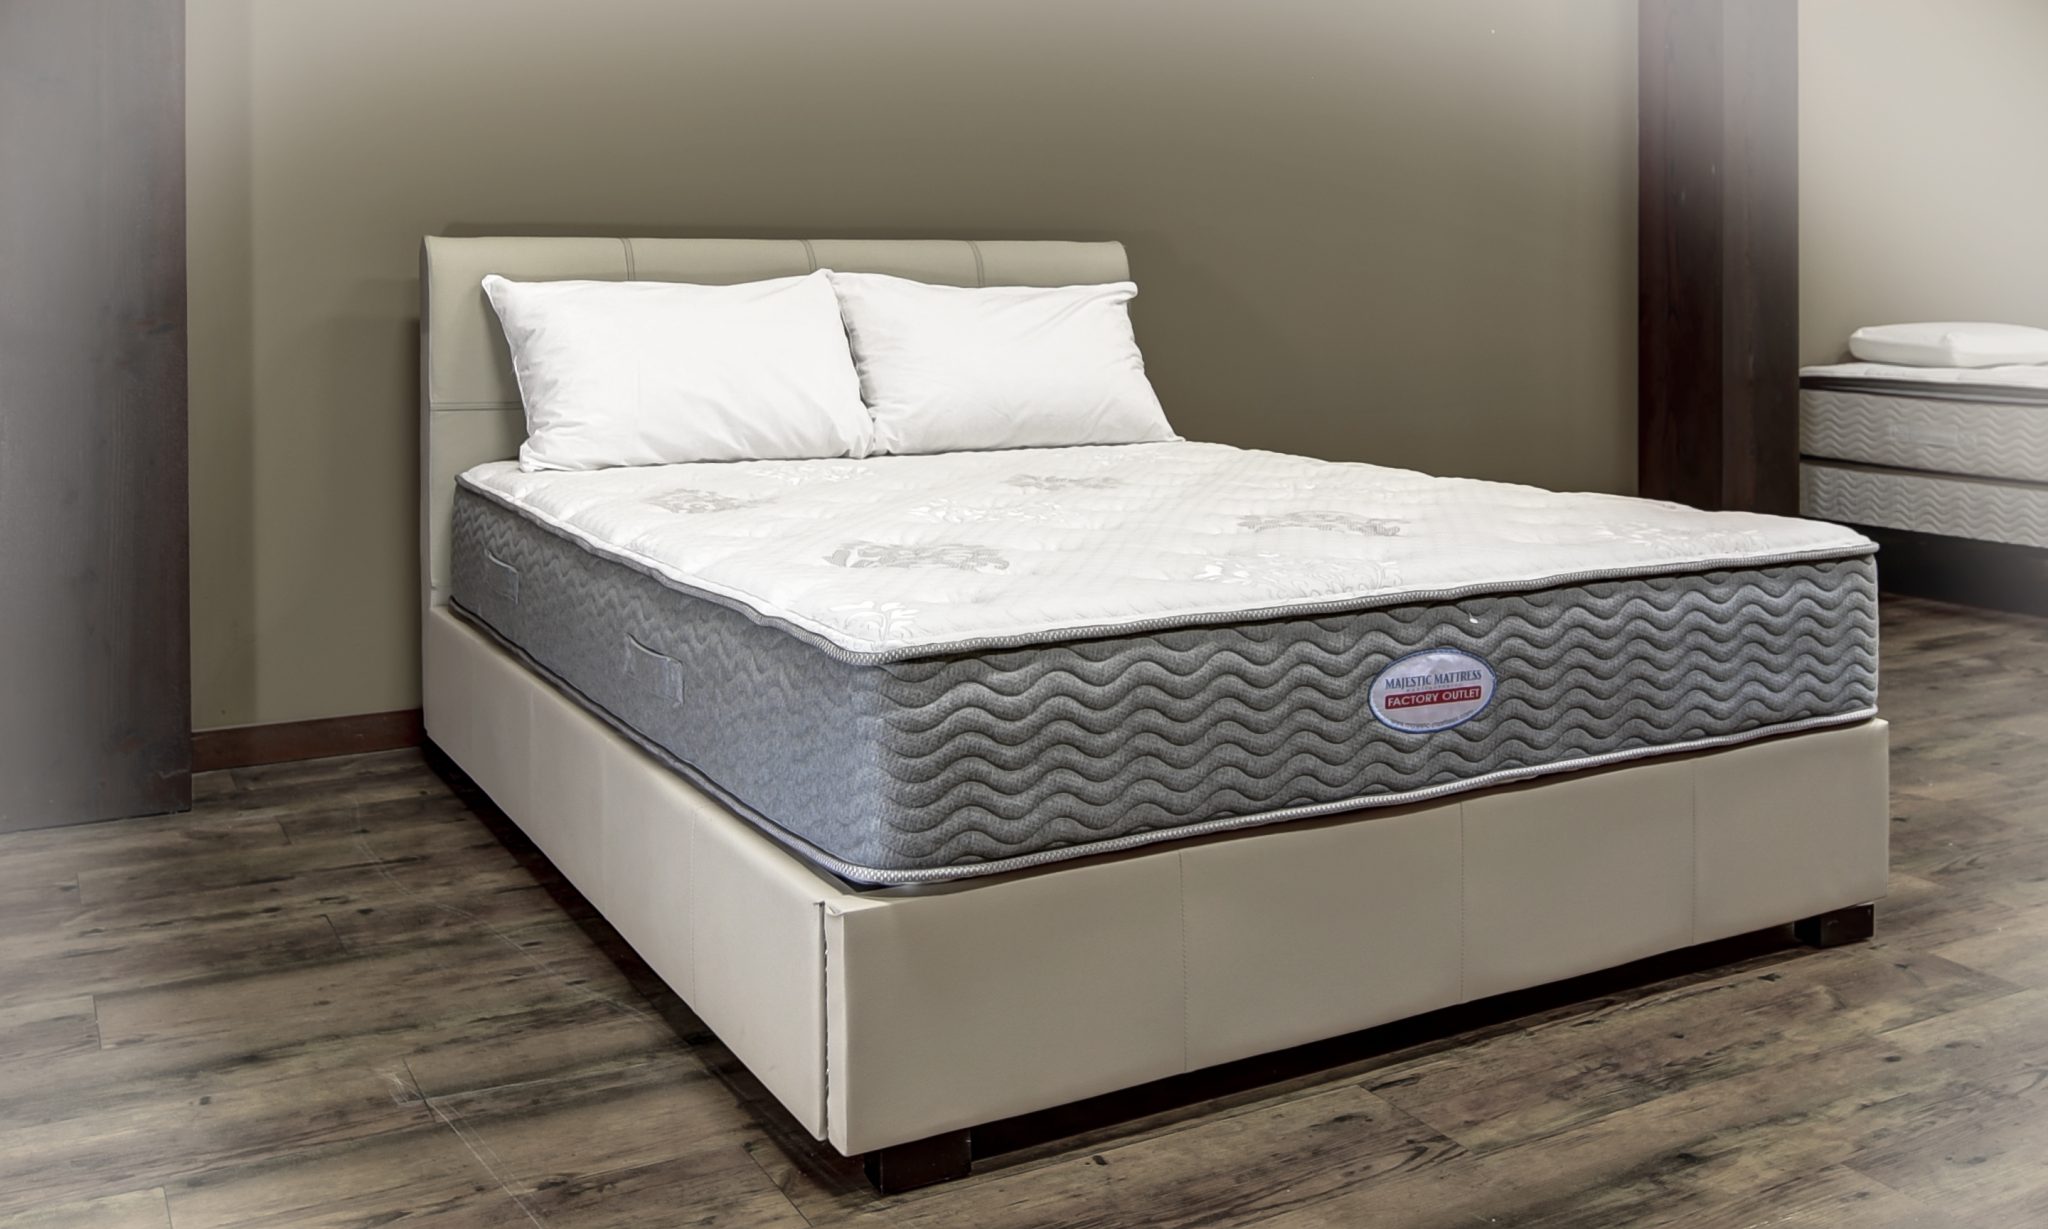 super soft mattress pad